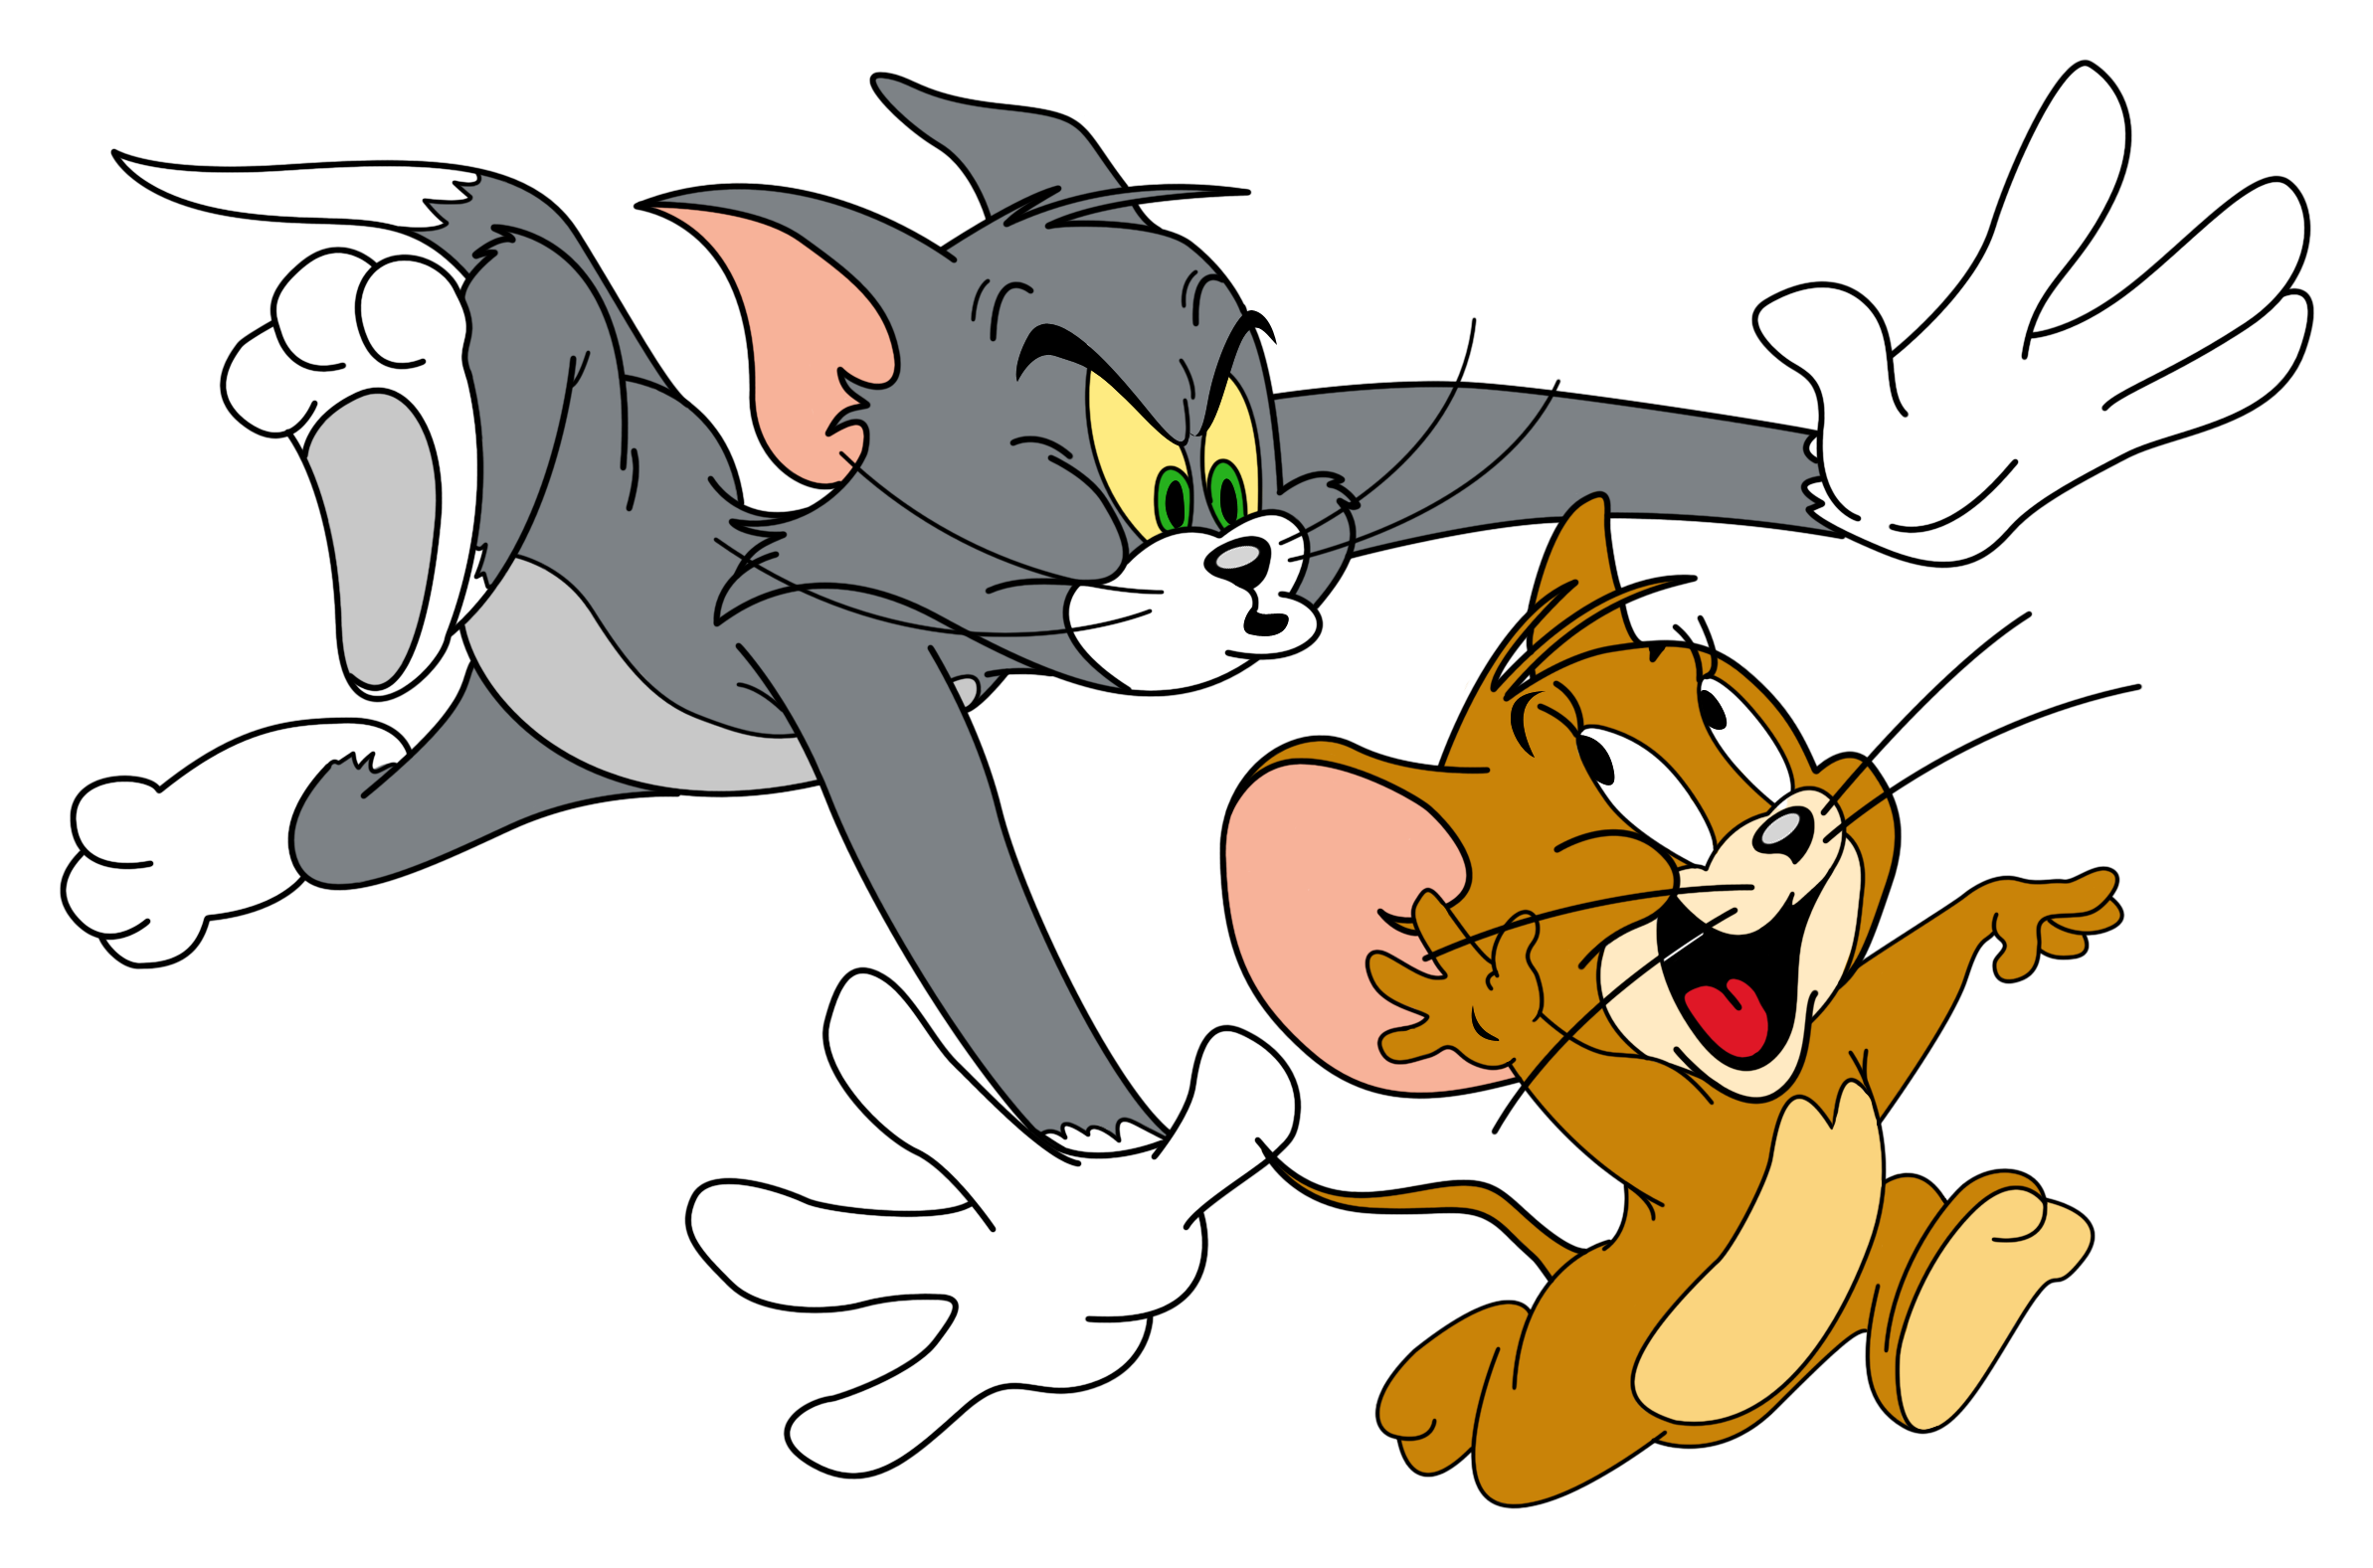 Tom và Jerry